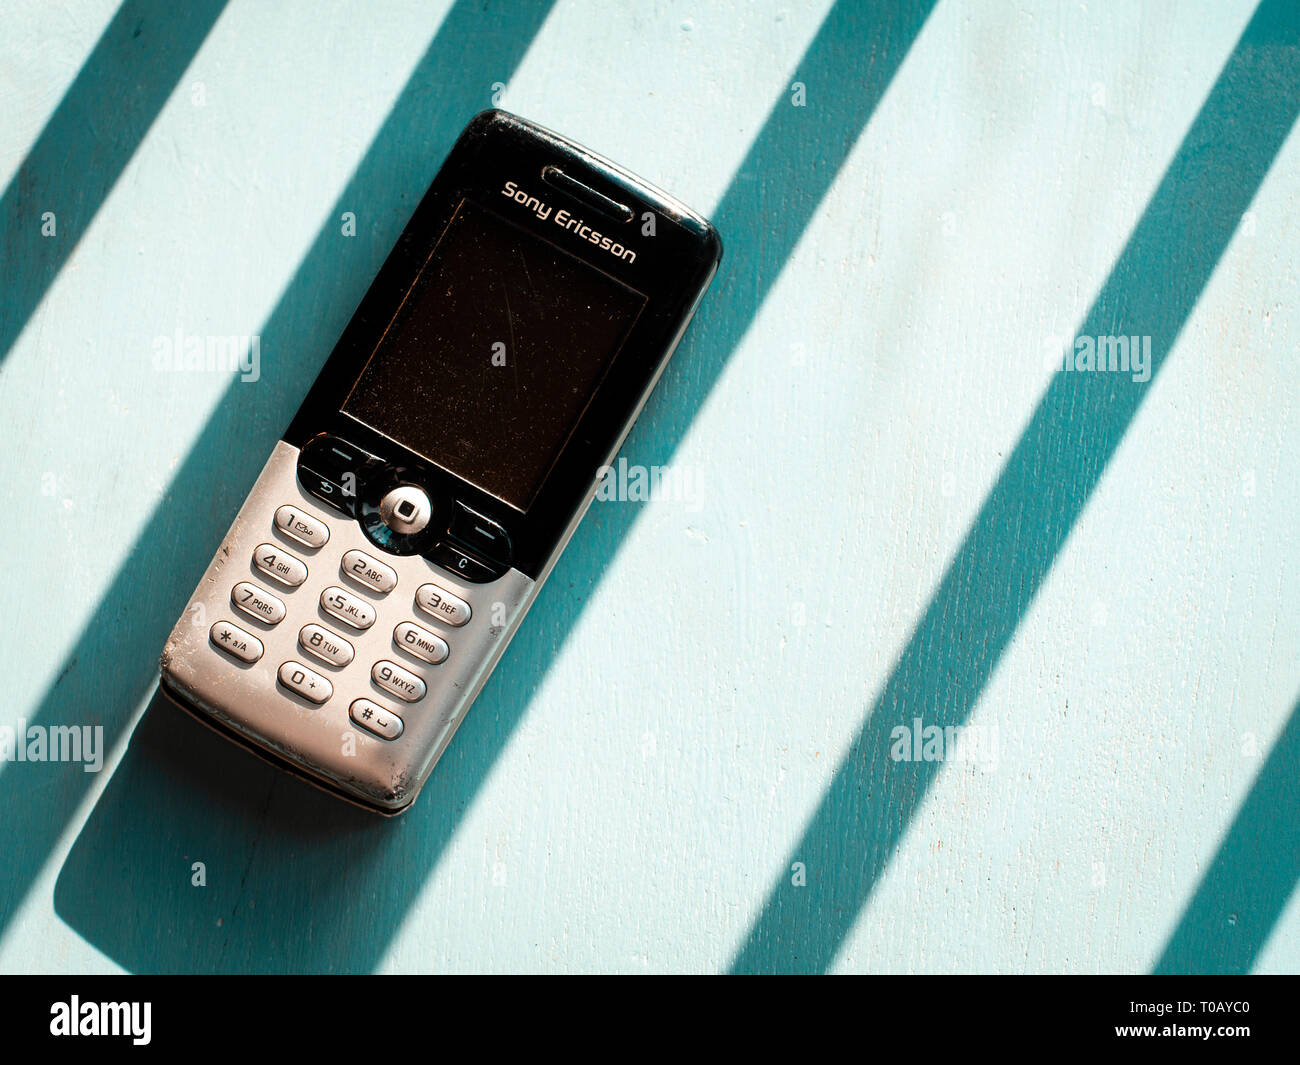 anchura Lo encontré alineación Teléfono móvil Sony Ericsson, Sony Mobile fue fundada en el año 2001  Fotografía de stock - Alamy